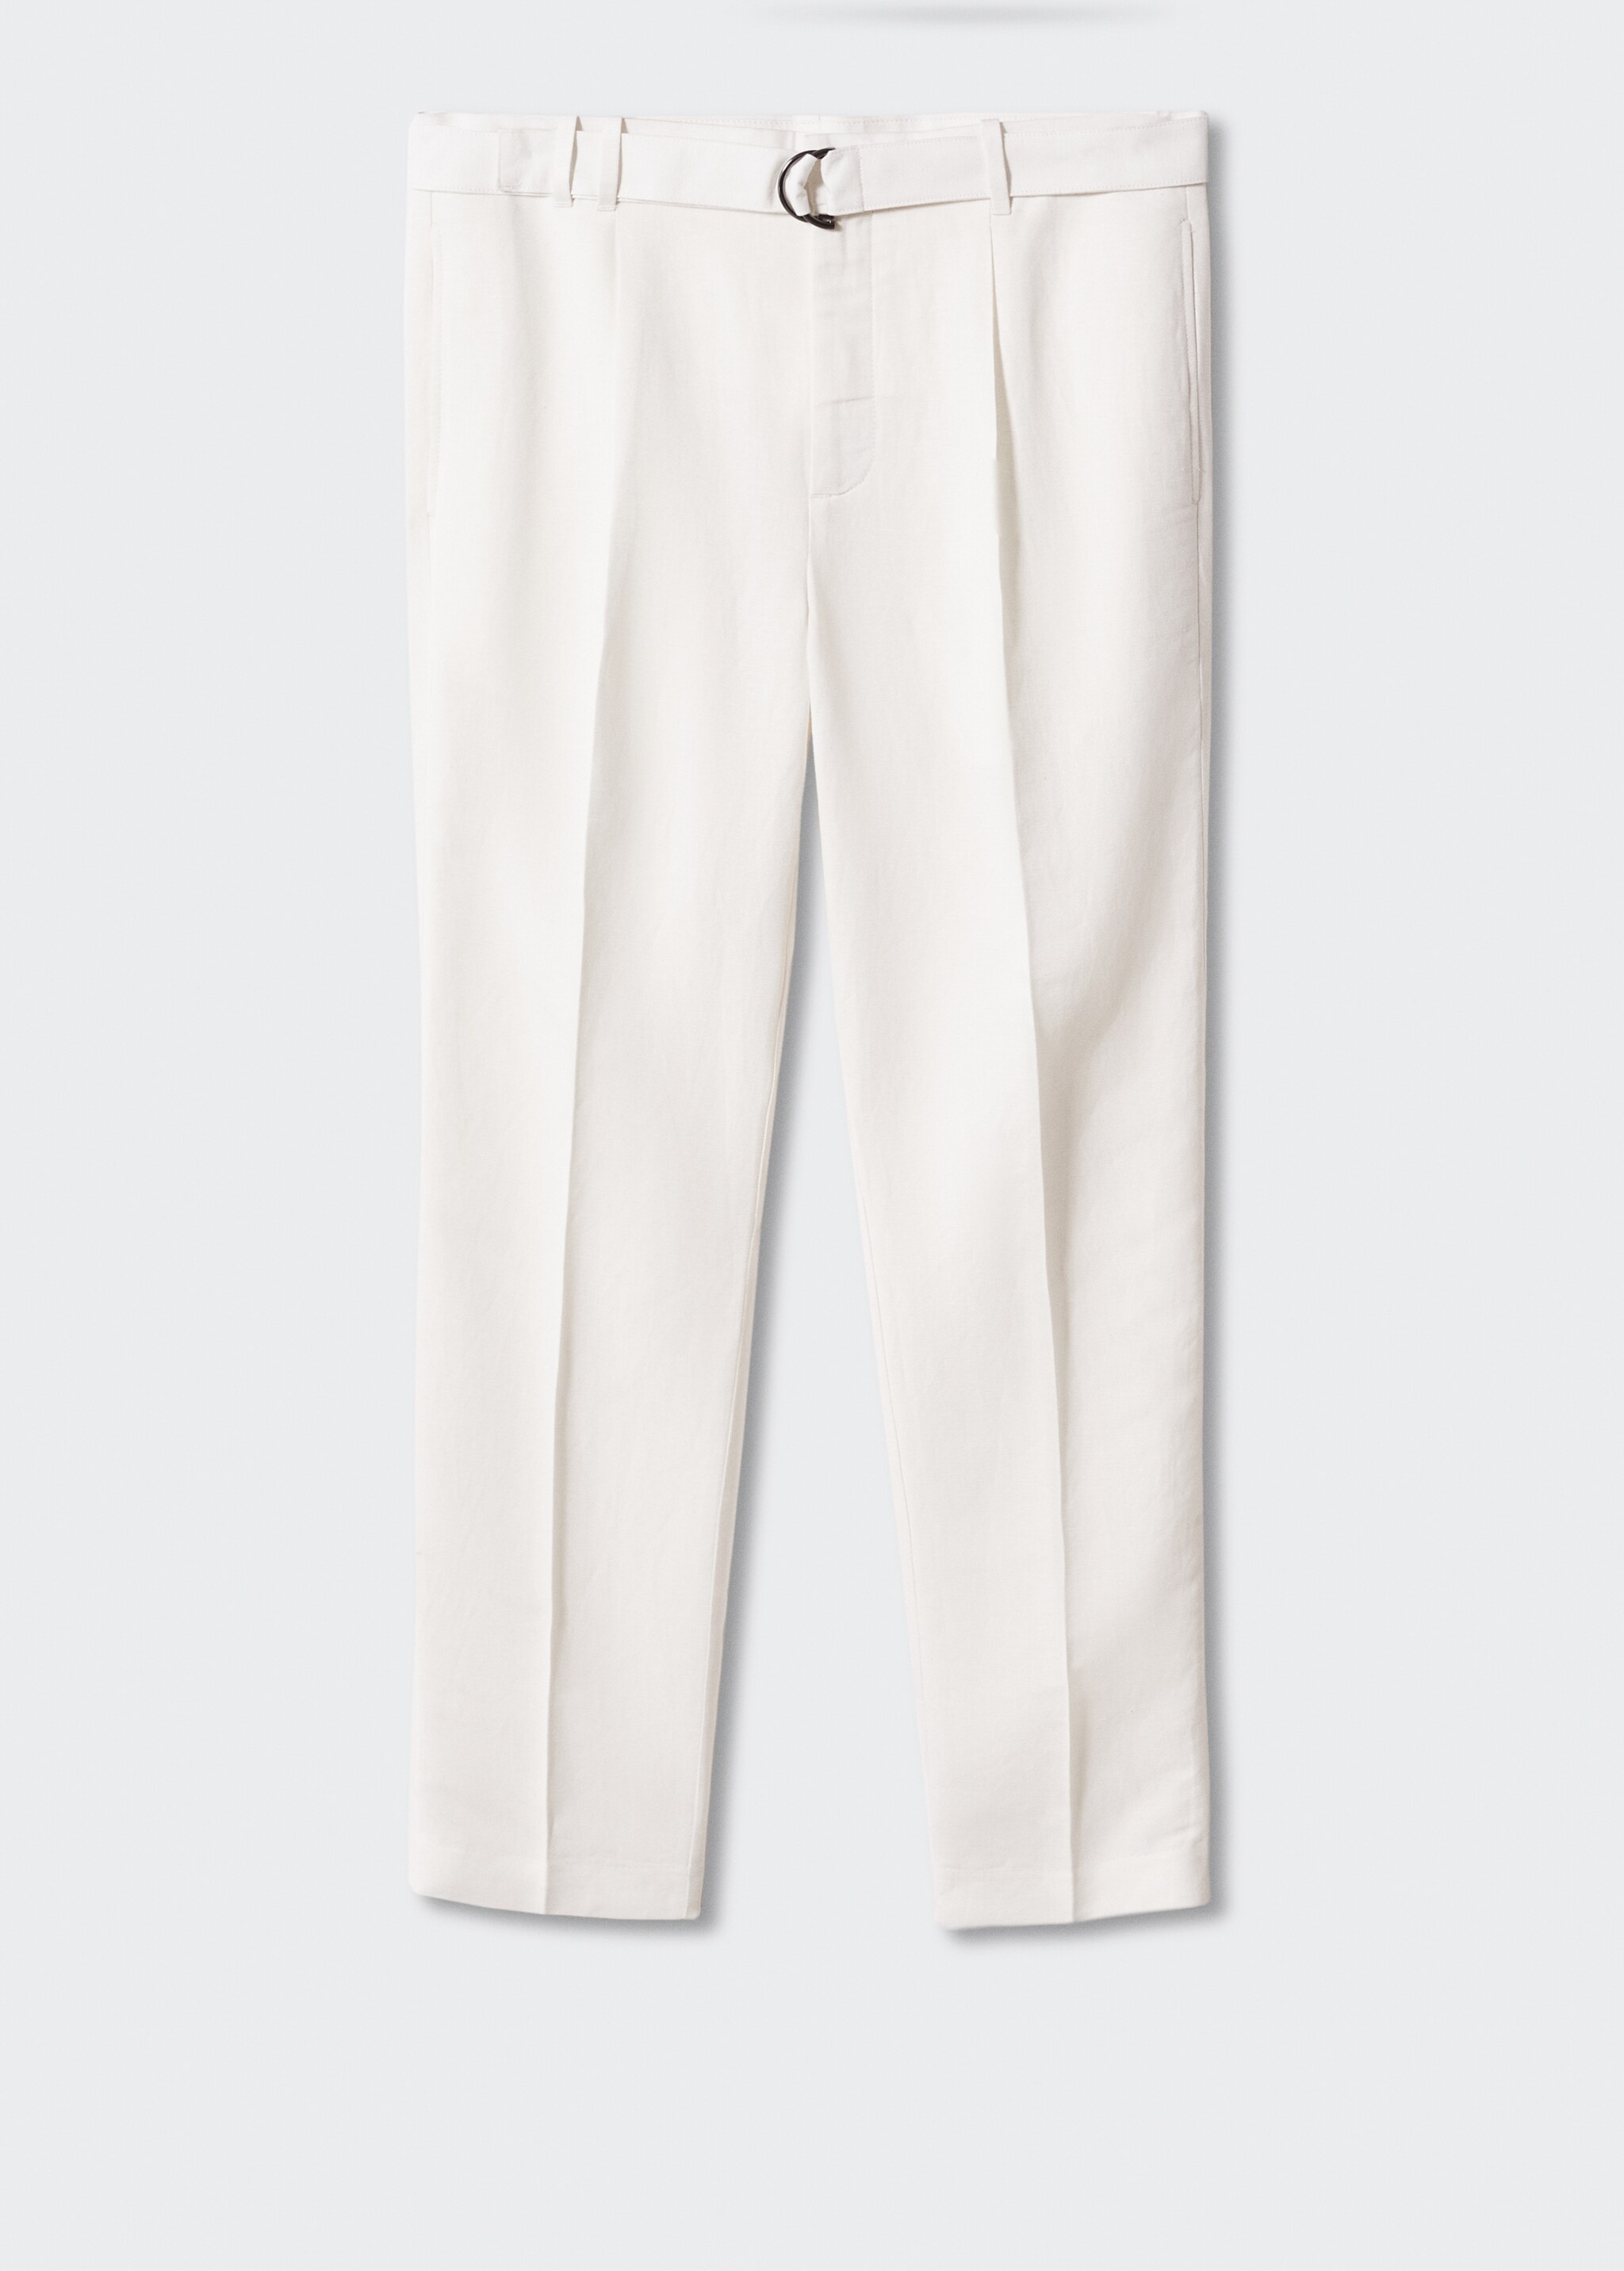 Pantalón lino cinturón - Artículo sin modelo